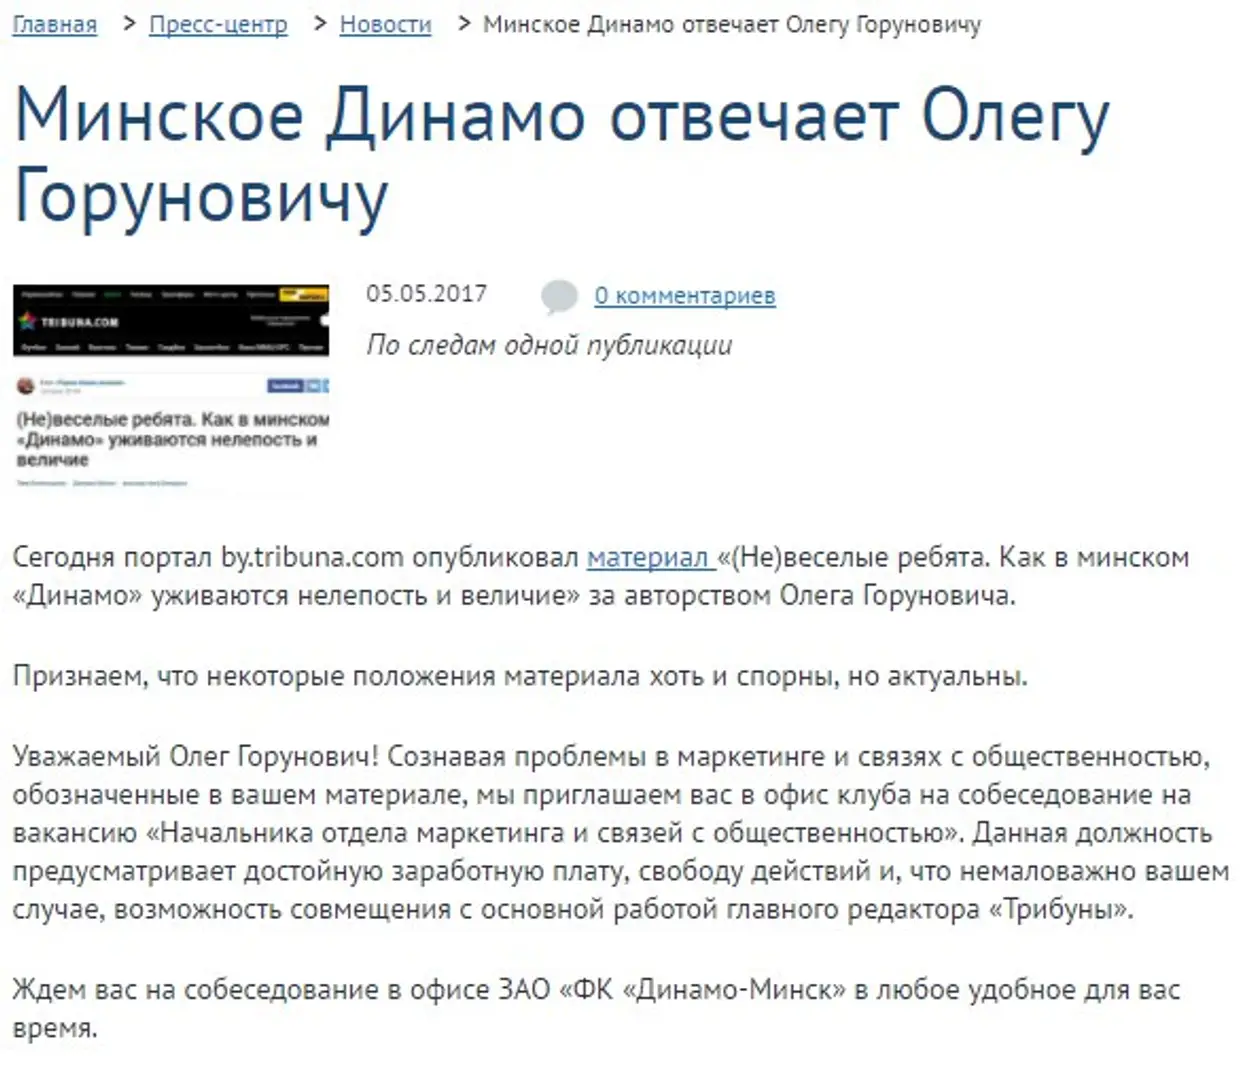 Минское «Динамо» предлагает работу главному редактору «Трибуны»